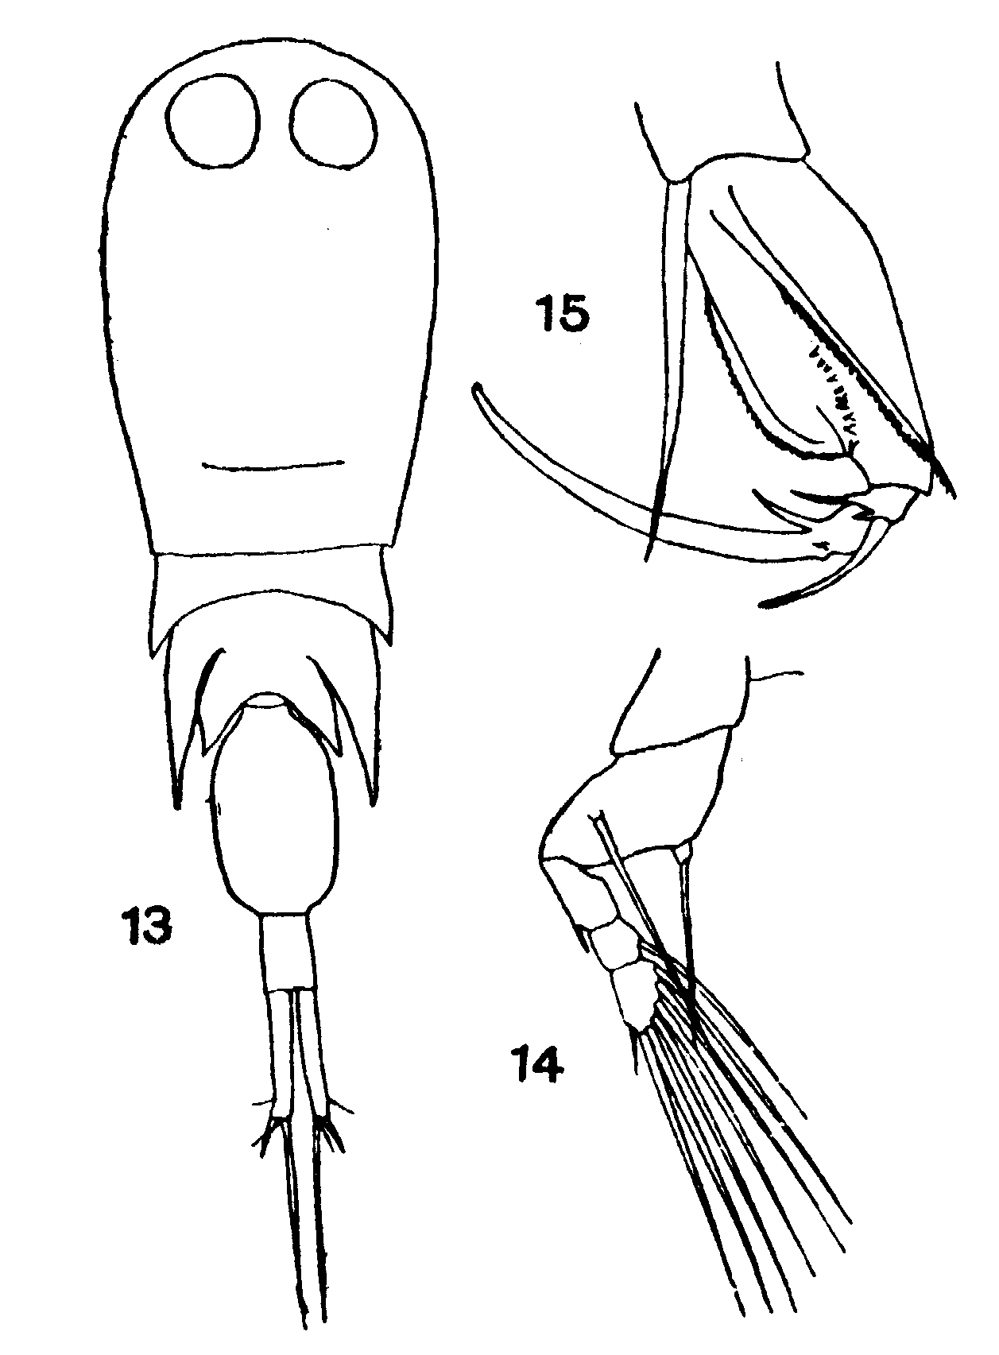 Espce Corycaeus (Agetus) flaccus - Planche 16 de figures morphologiques